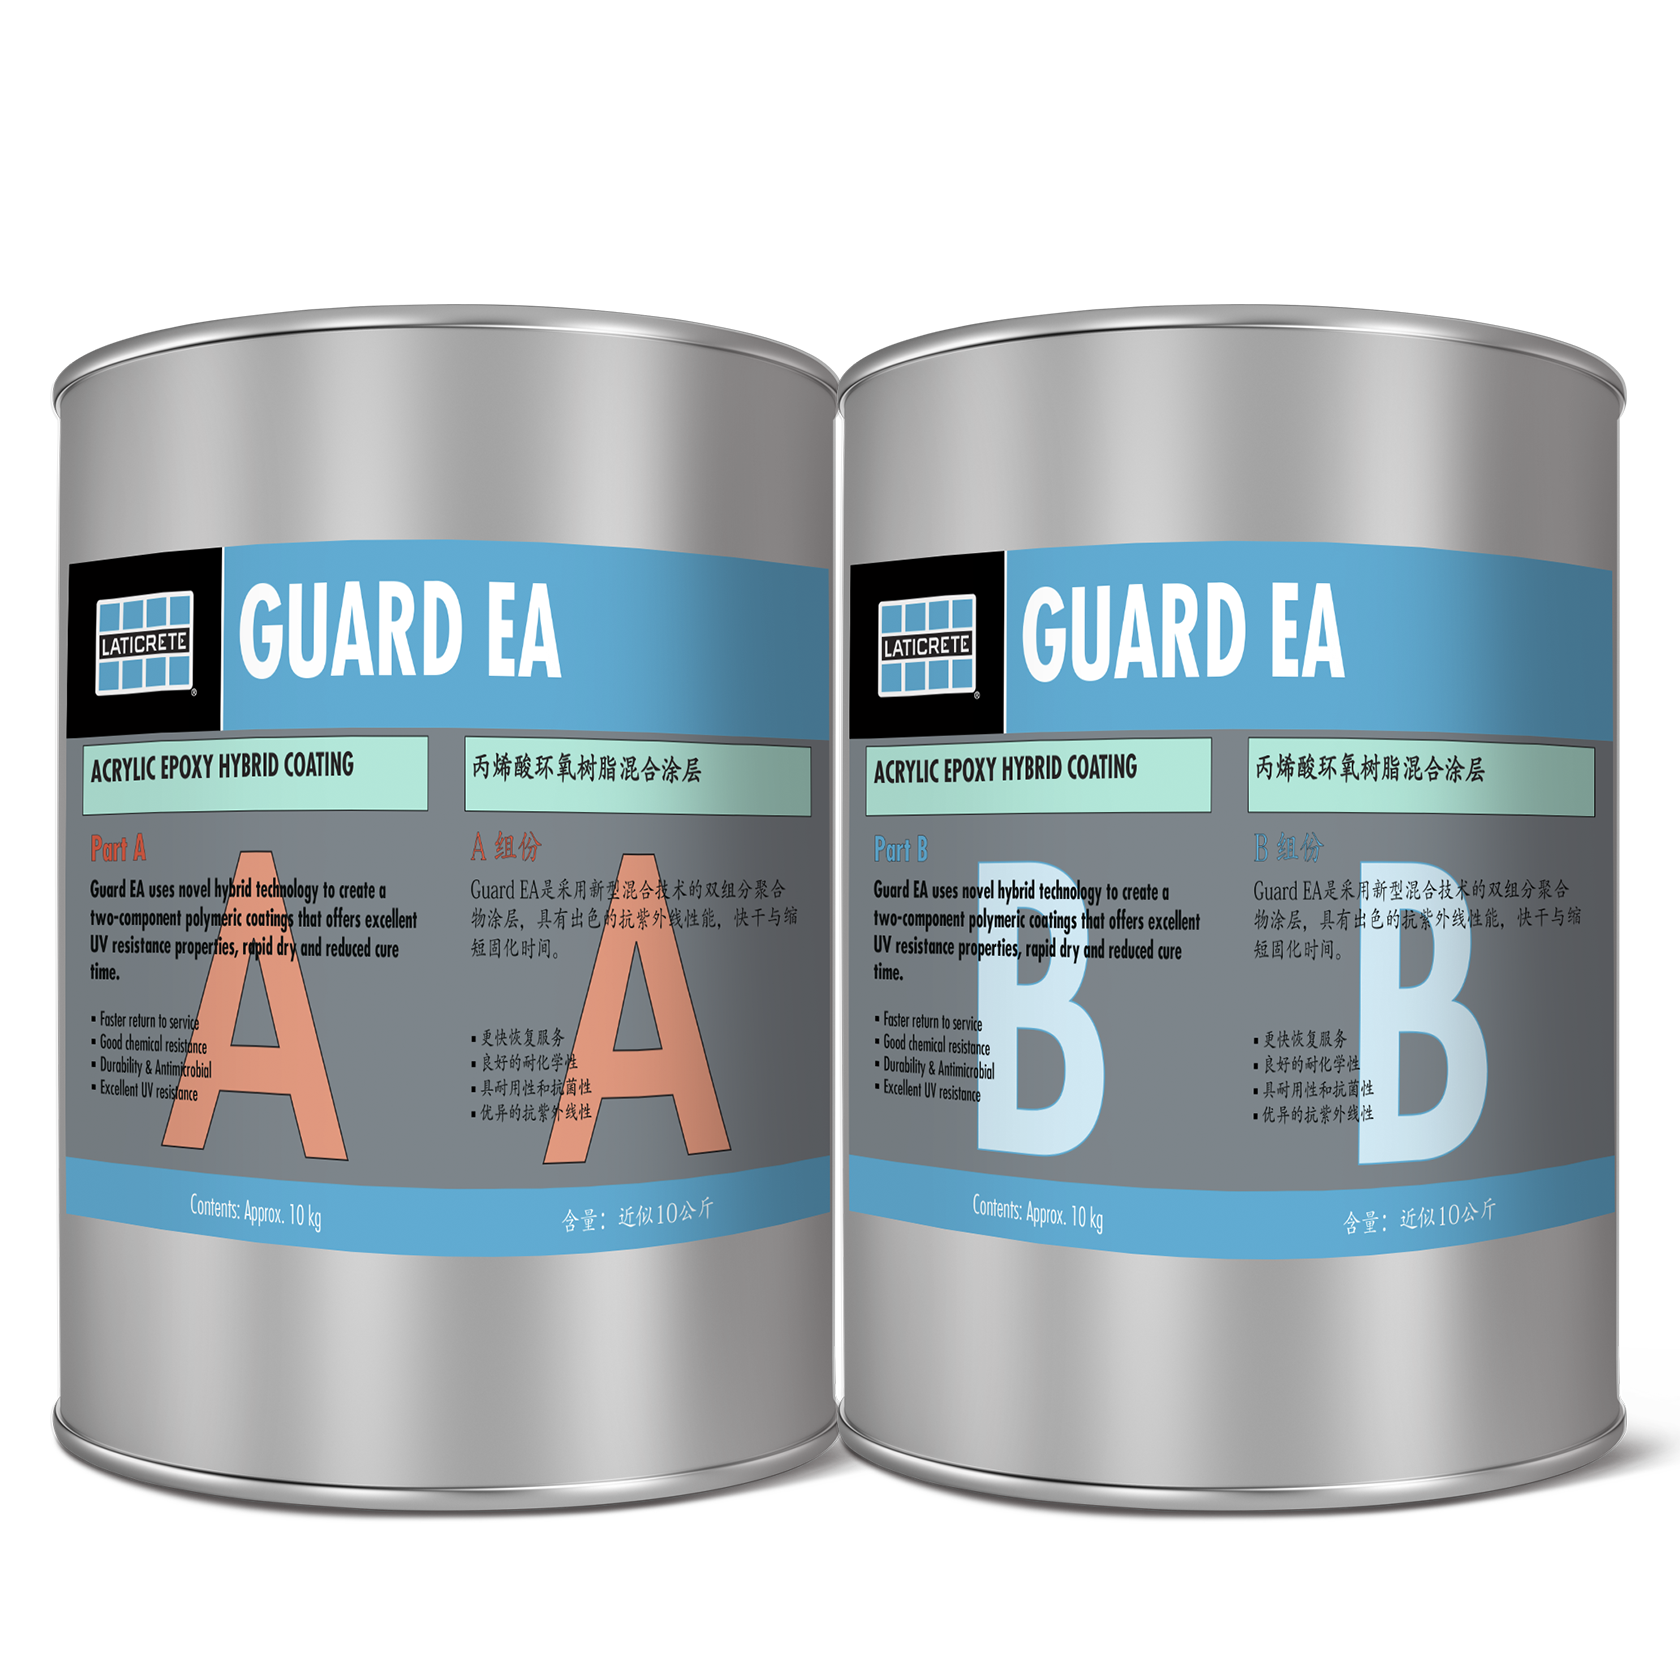 Guard EA